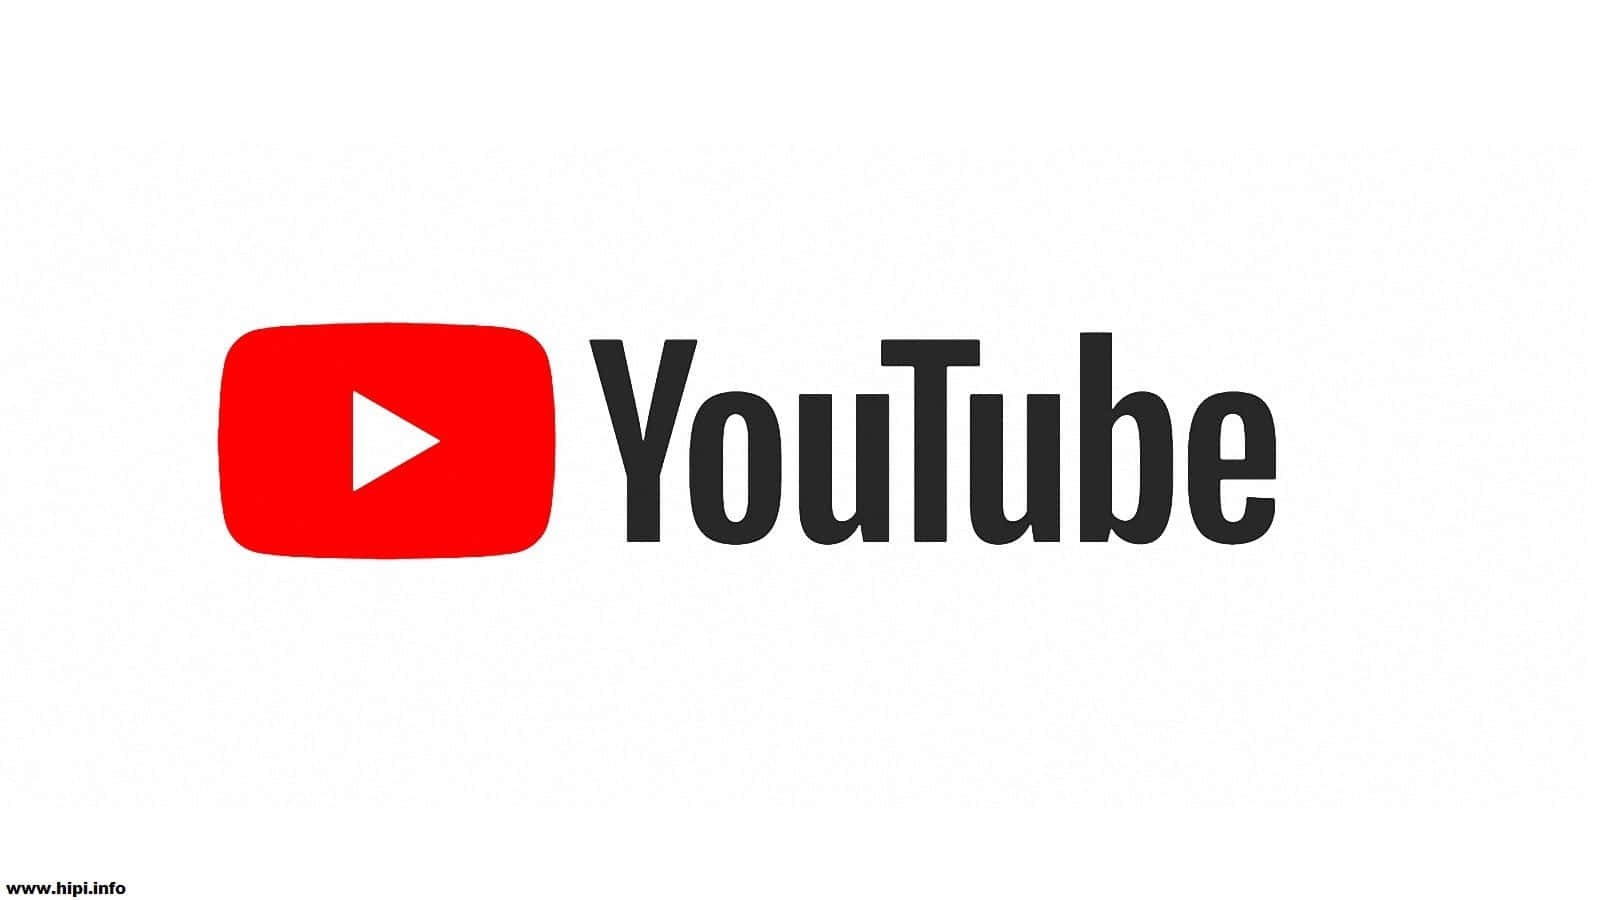 Logotipode Youtube Sobre Un Fondo Negro